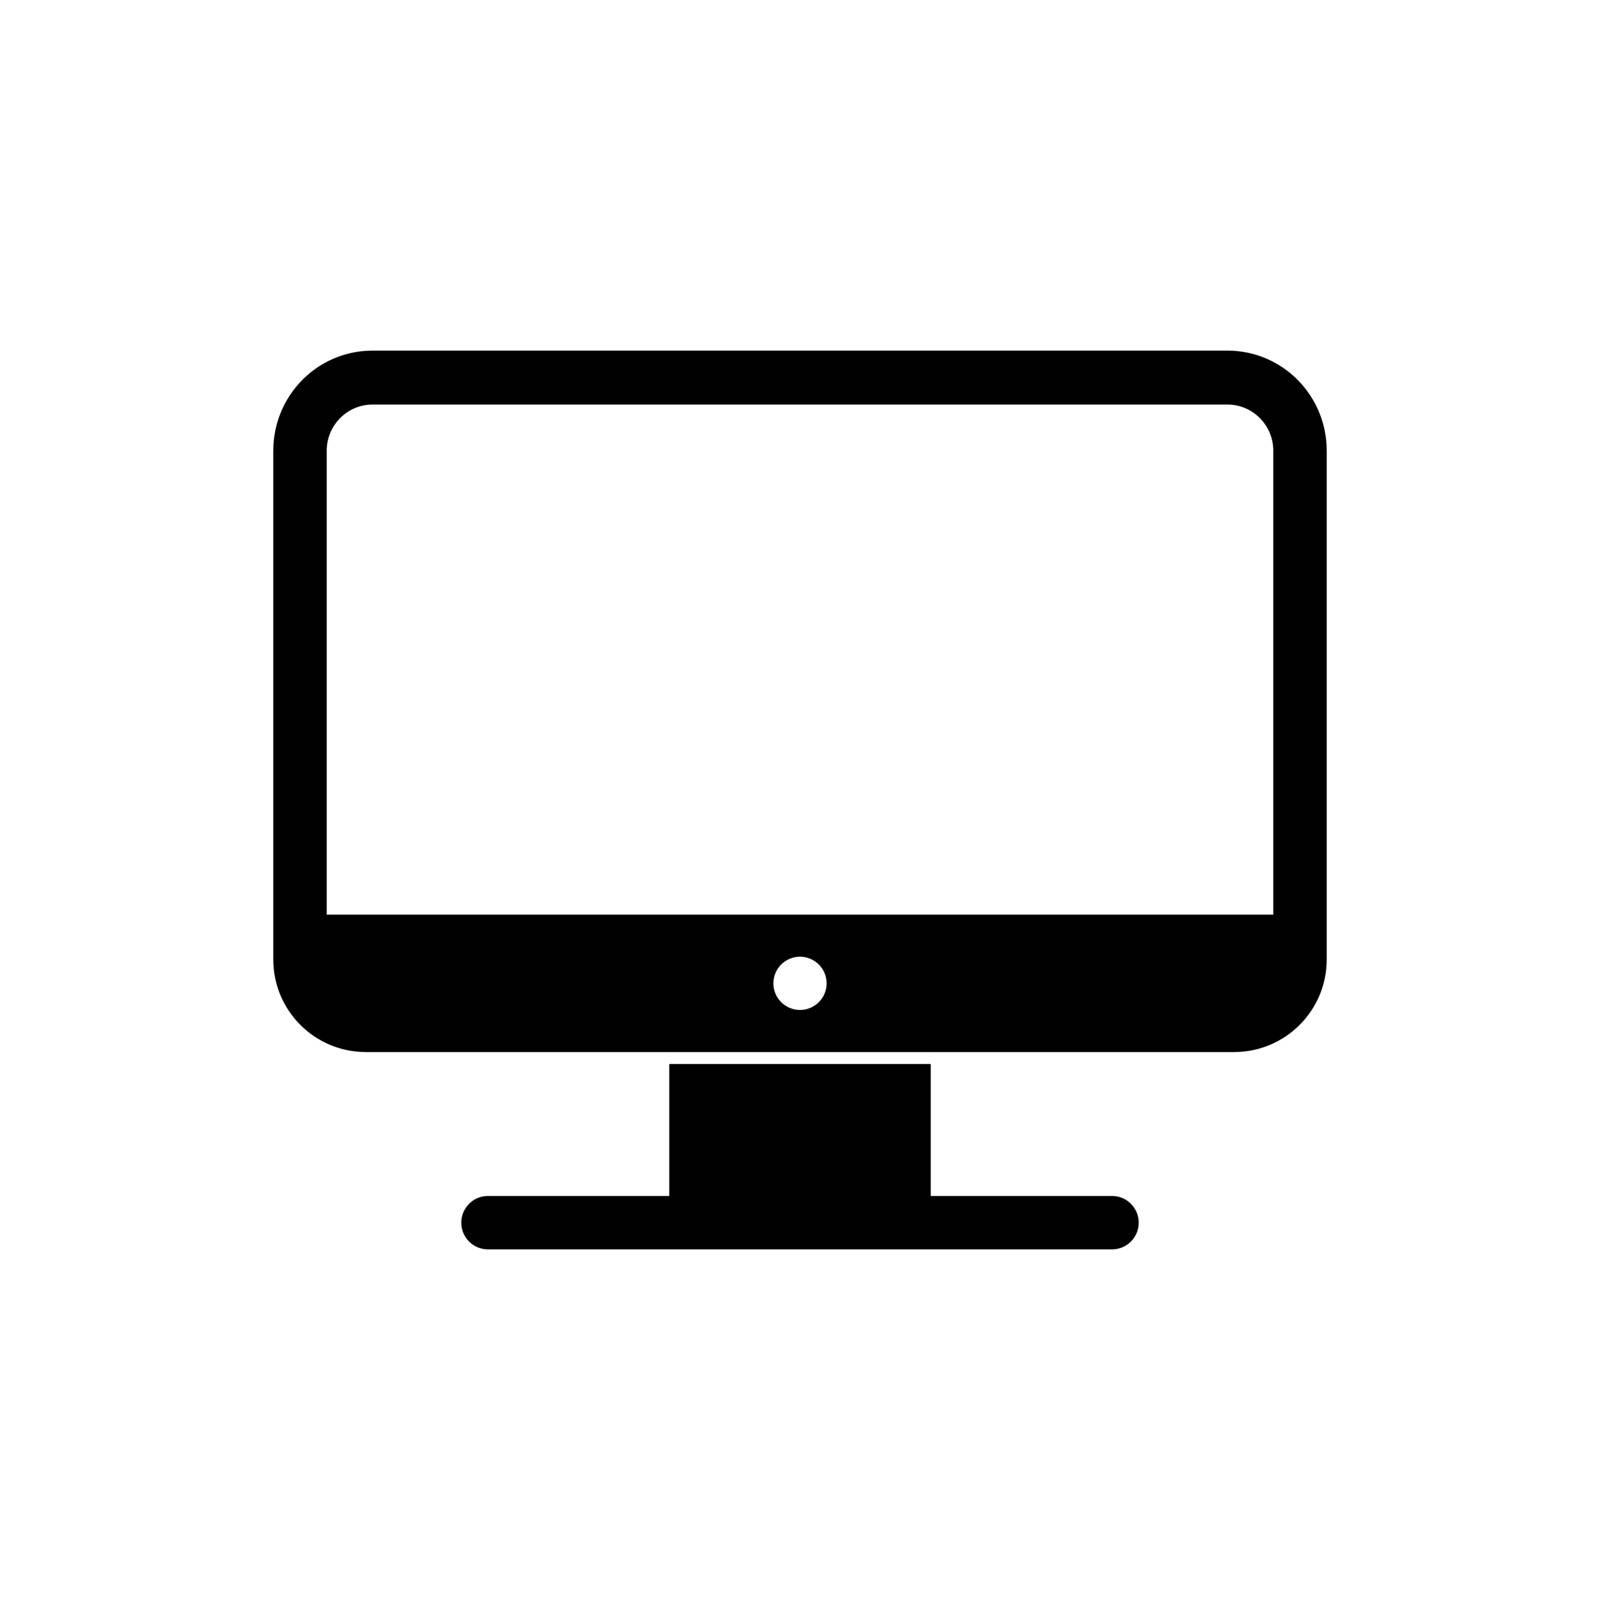 Desktop computer icon. Computer screen symbol by veronawinner